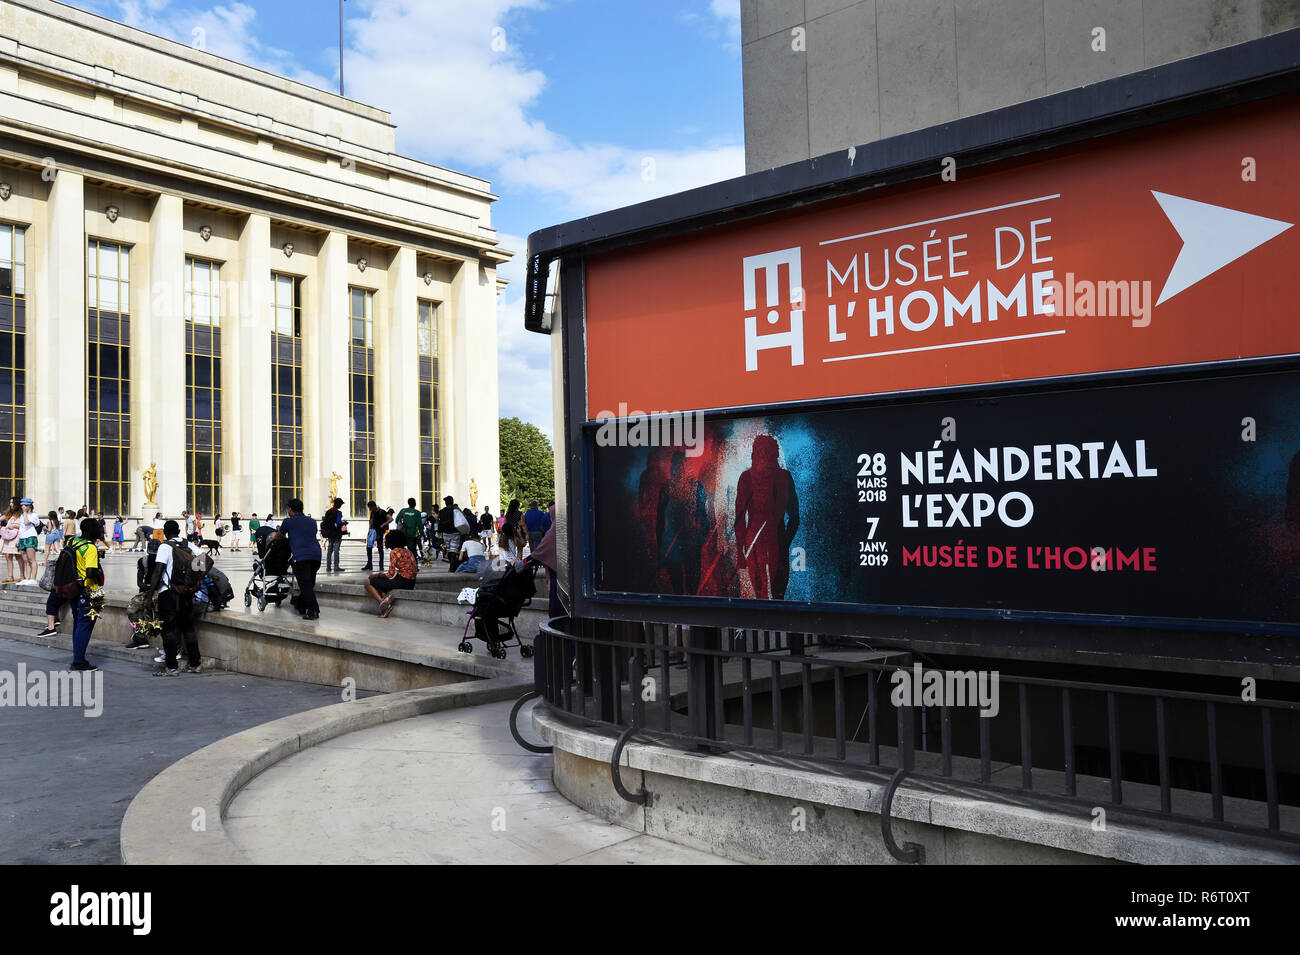 Musée de l'Homme - Paris - france Stock Photo